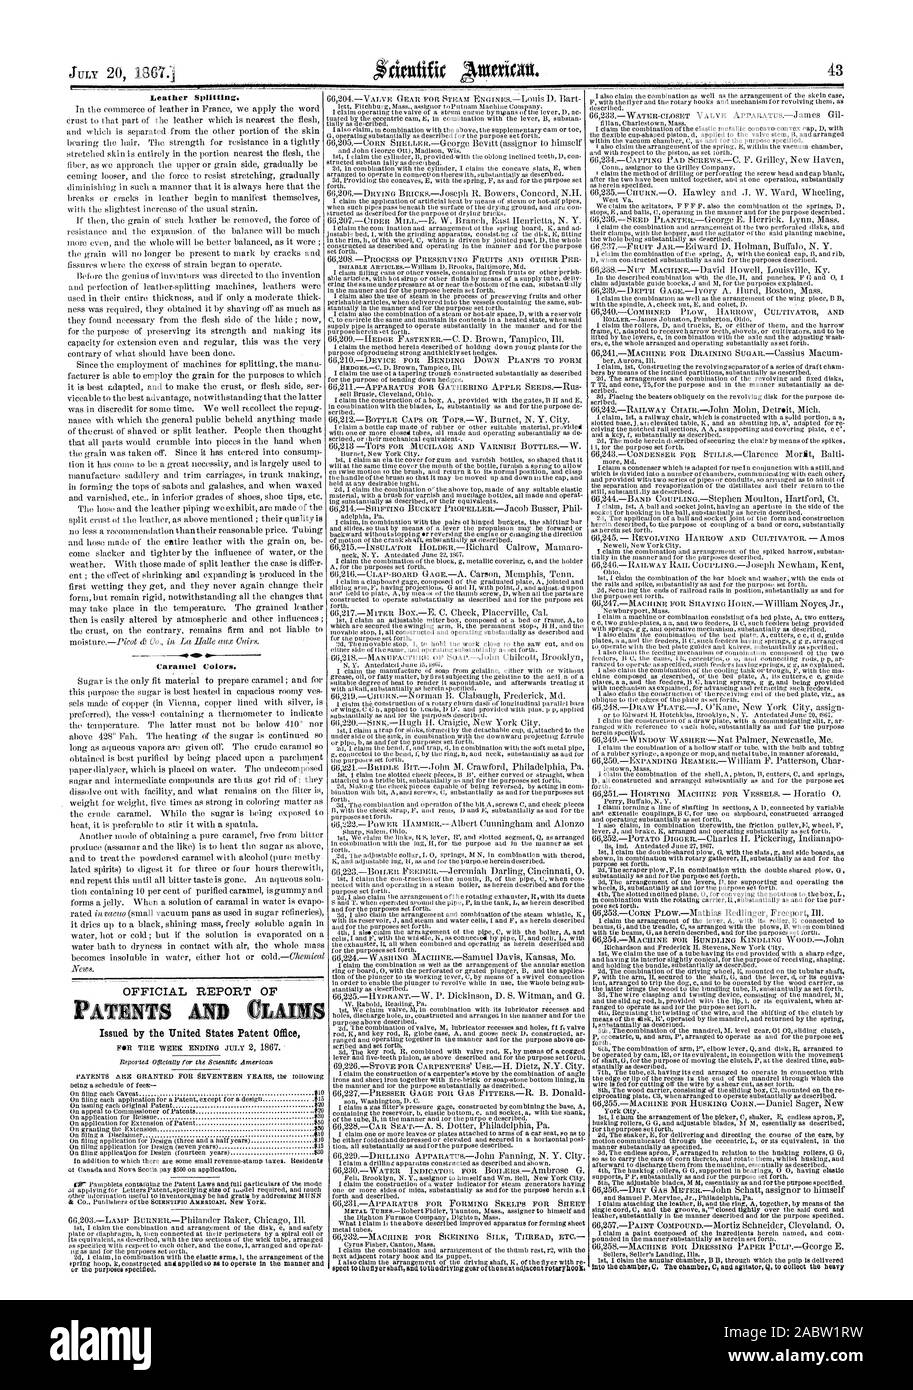 La División de cuero. Colores caramelo, Scientific American, 1867-07-20 Foto de stock